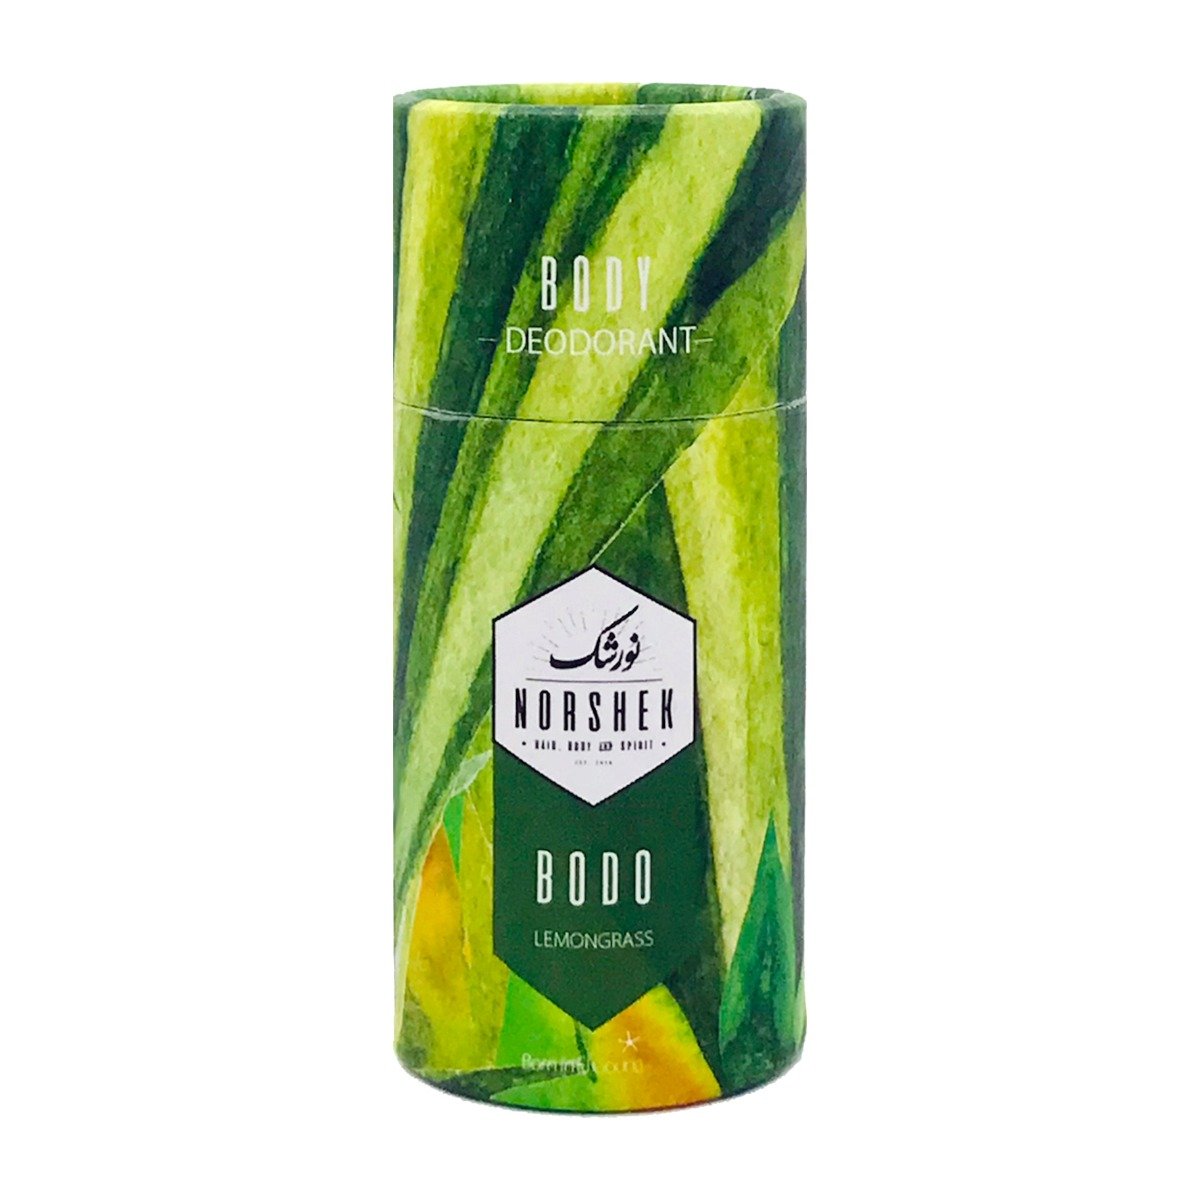 Norshek Bodo Deodorant 50gm - Lemongrass - Bloom Pharmacy